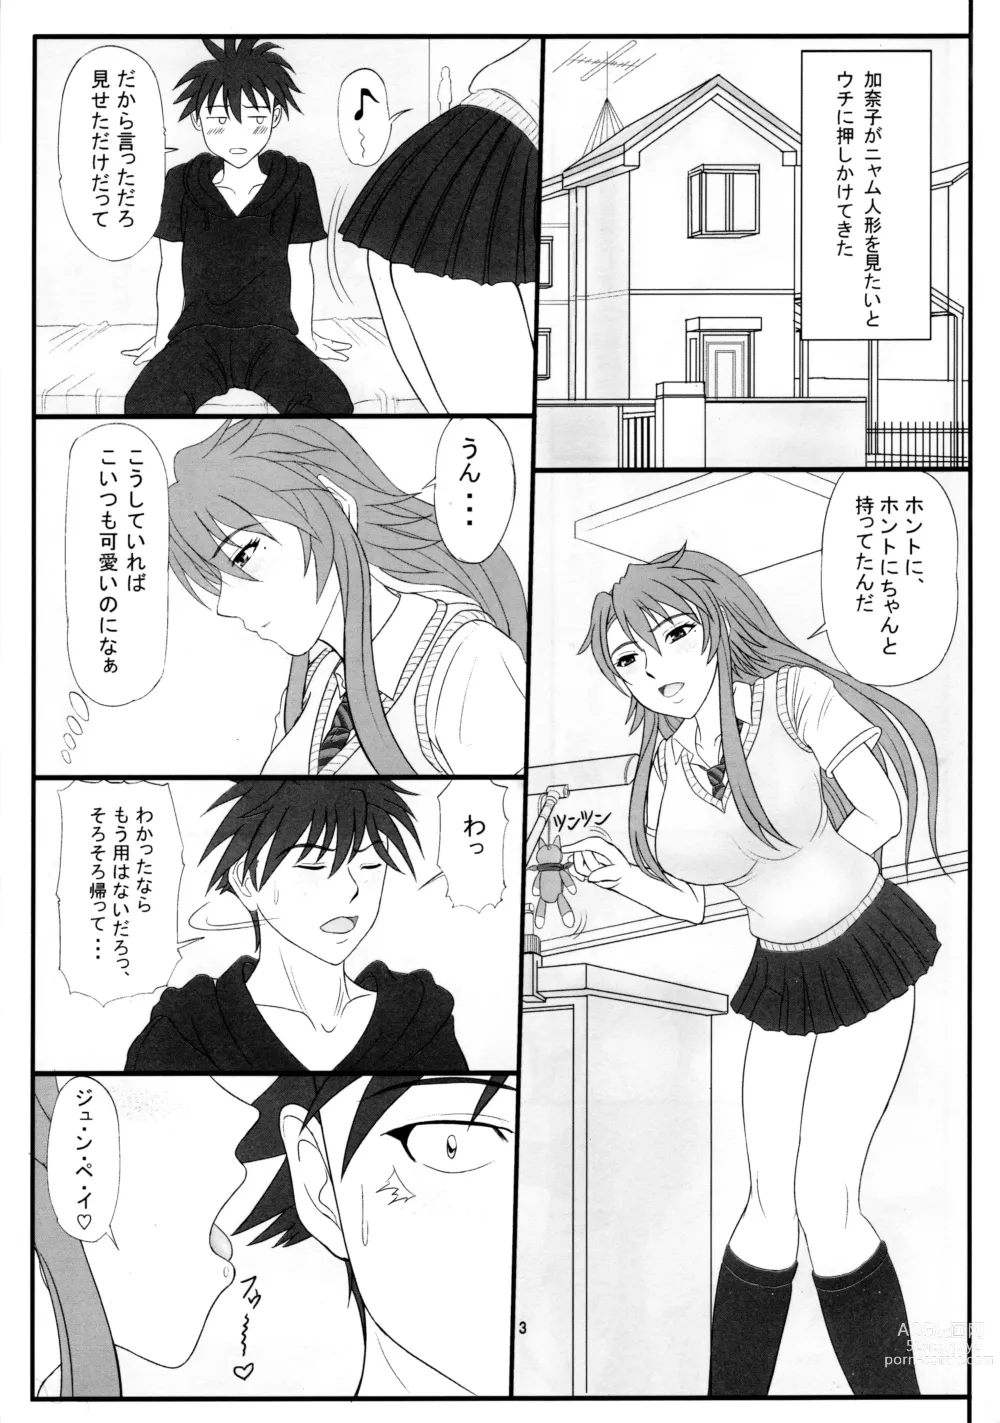 Page 2 of doujinshi Kanako Oppai!